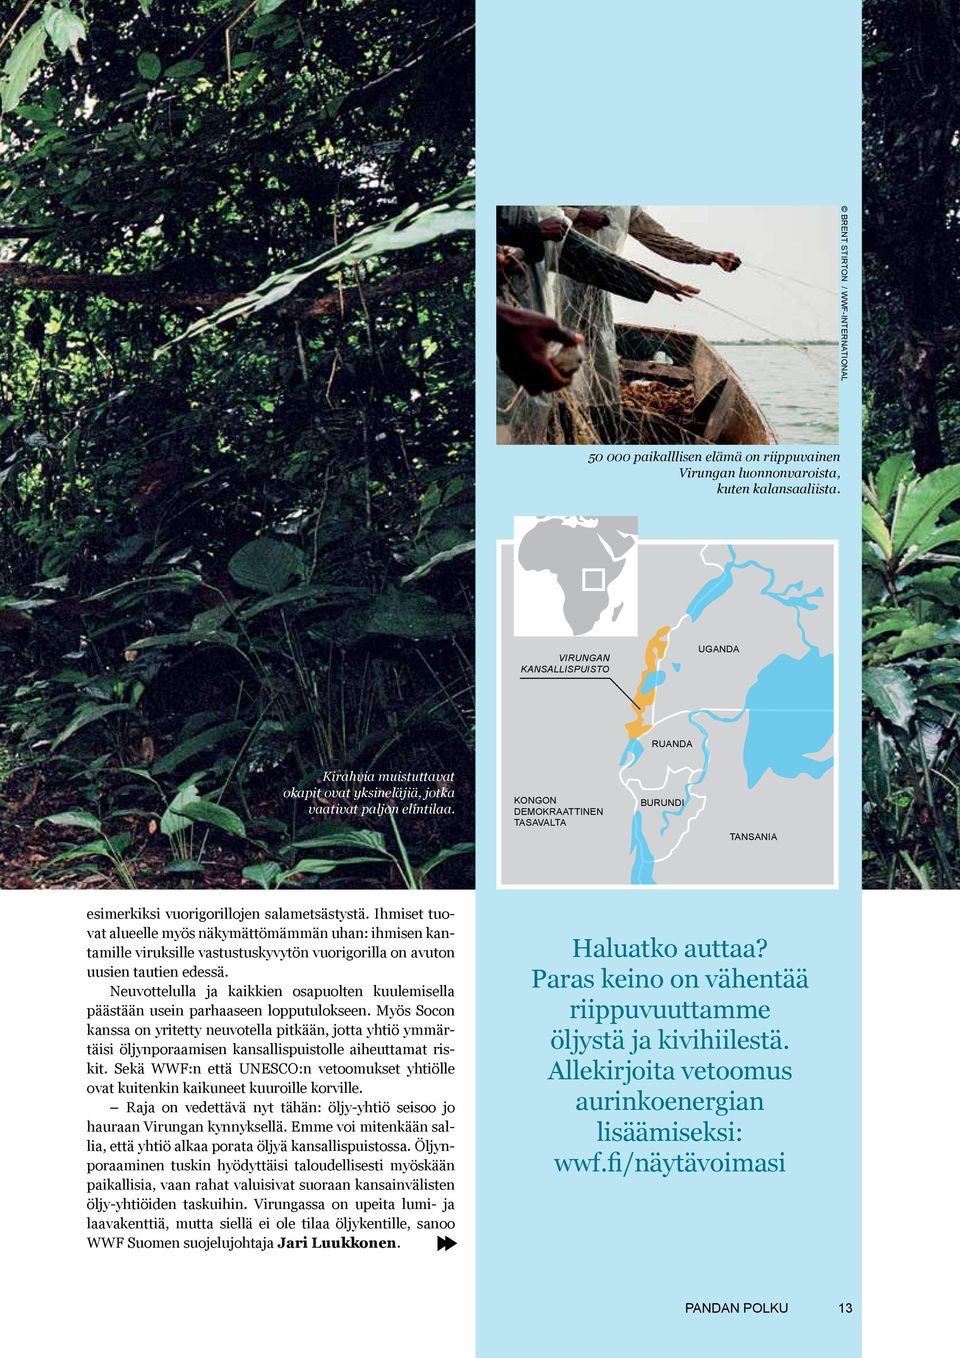 KONGON DEMOKRAATTINEN TASAVALTA BURUNDI TANSANIA esimerkiksi vuorigorillojen salametsästystä.